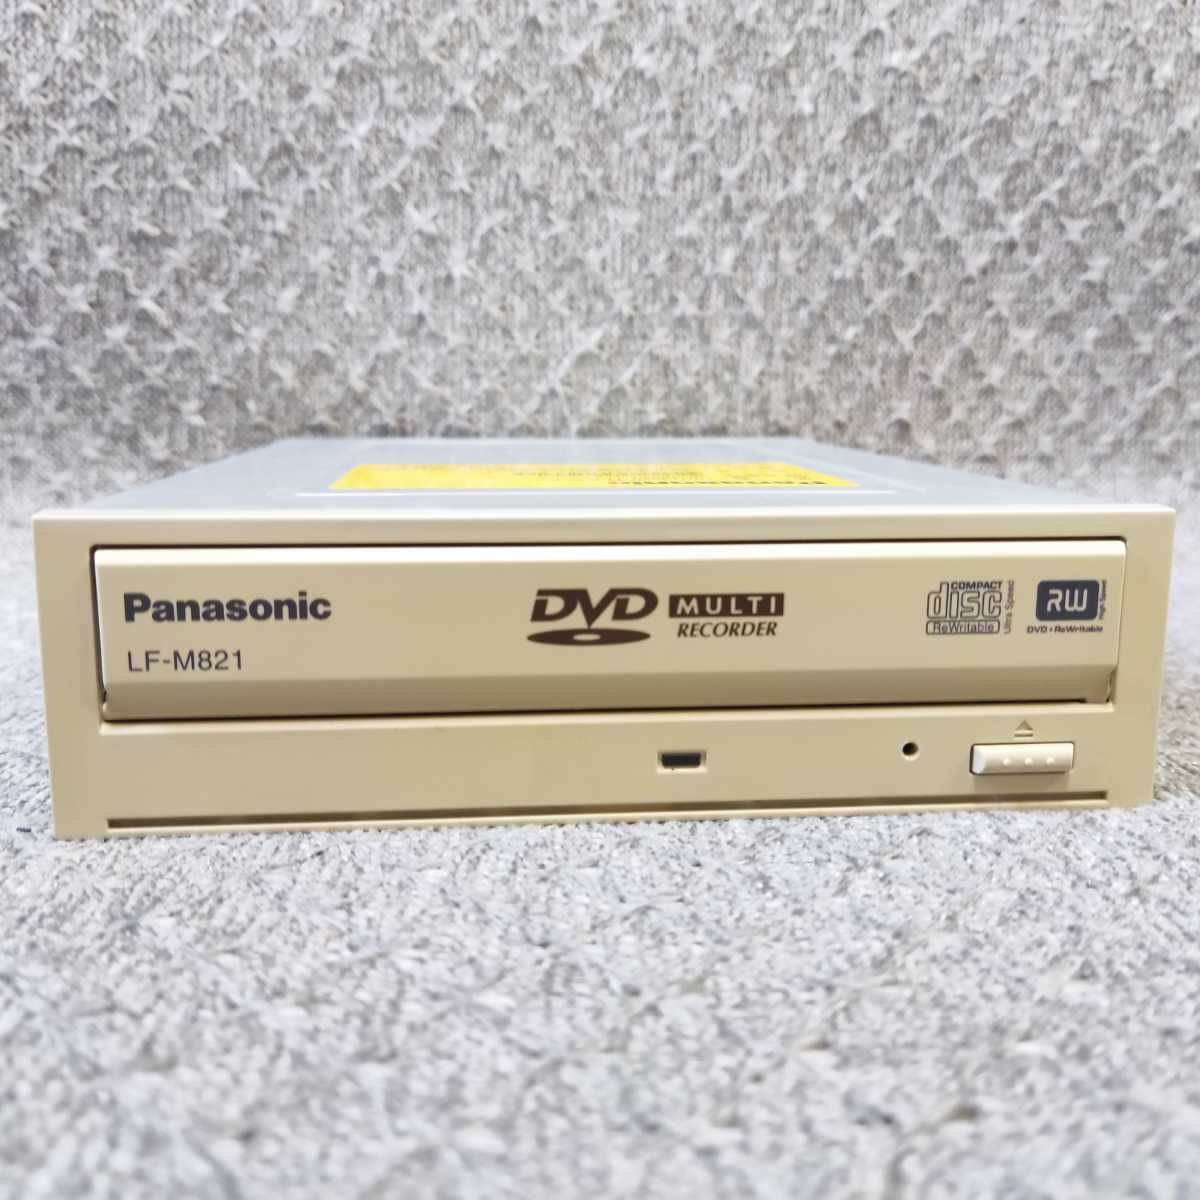  срочная доставка без доставки * Panasonic LF-M821 встроенный Multi DVD мульти- Drive картридж соответствует ATAPI IDE 5.25 дюймовый б/у исправно работающий товар * проверка settled DA042